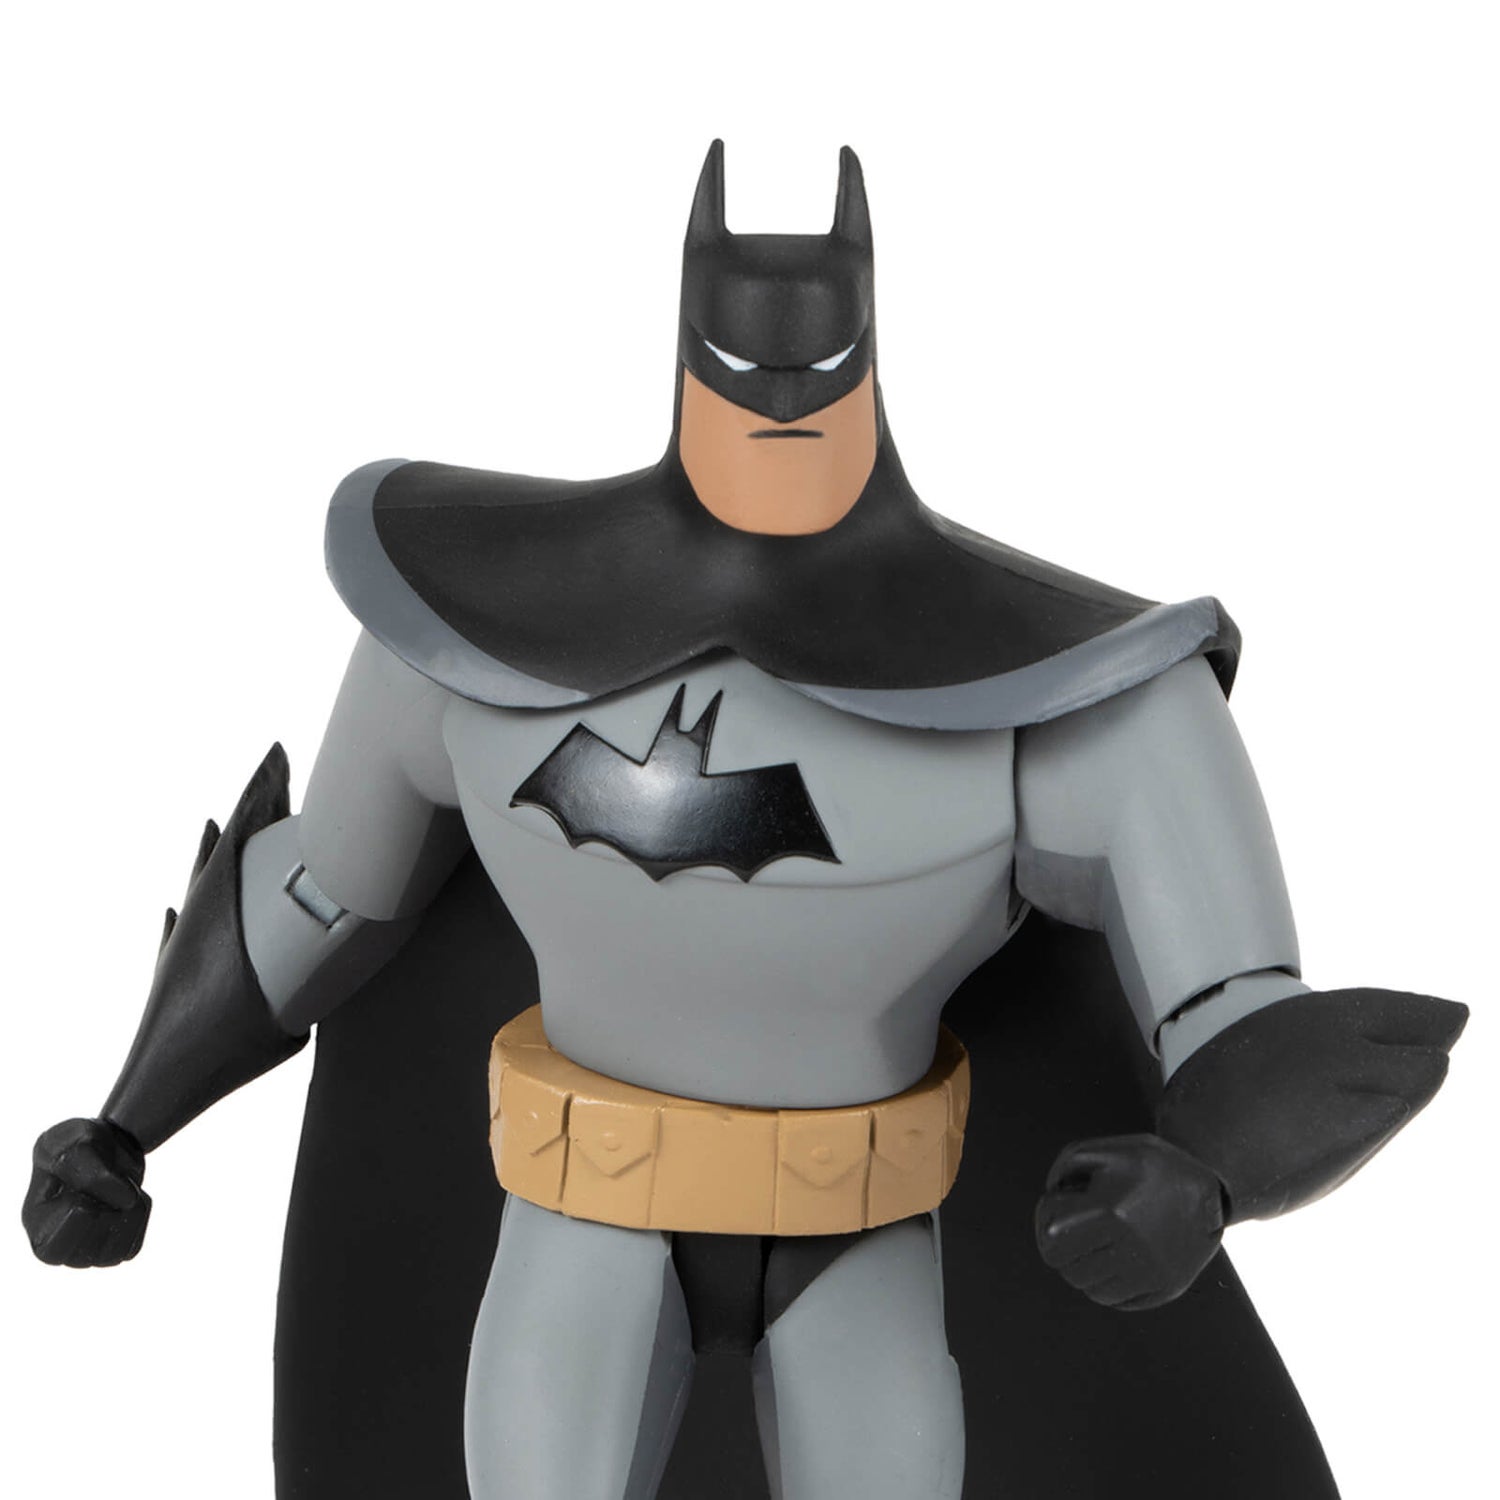 DC Direct Batman: The Adventures Continue Action Figure - Batman (Version 2)